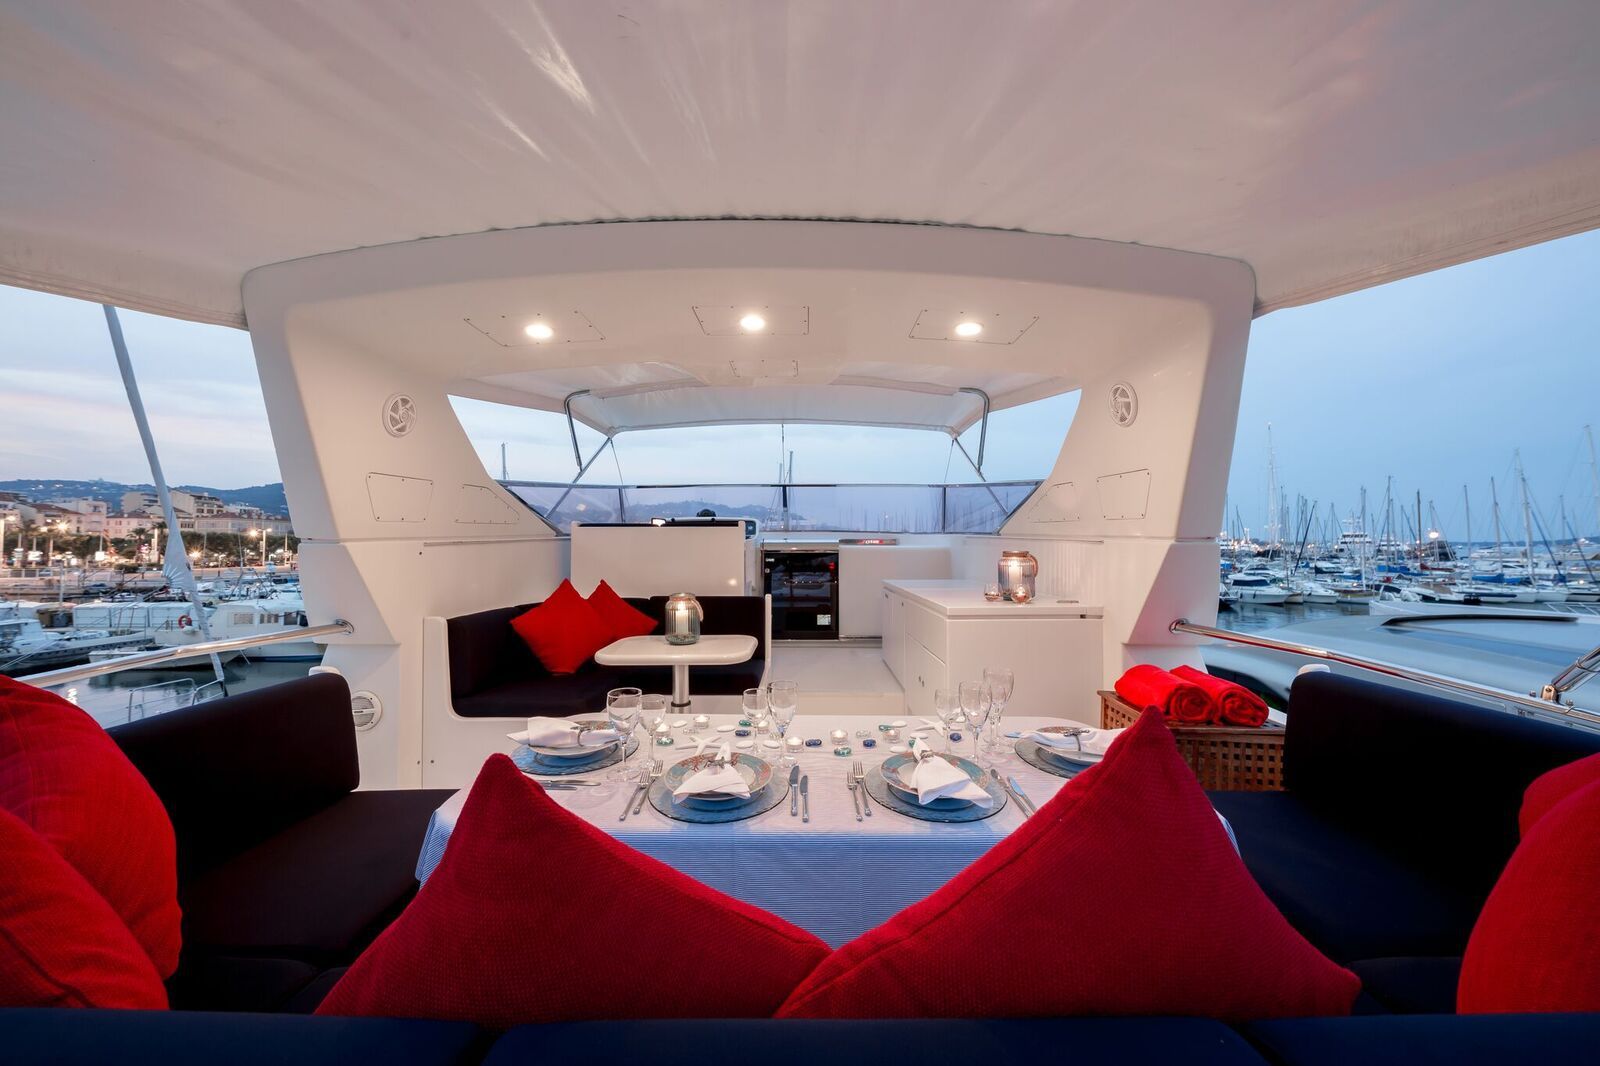 INDULGENCE OF POOLE Mangusta 86 Luxury Superyacht Flybridge